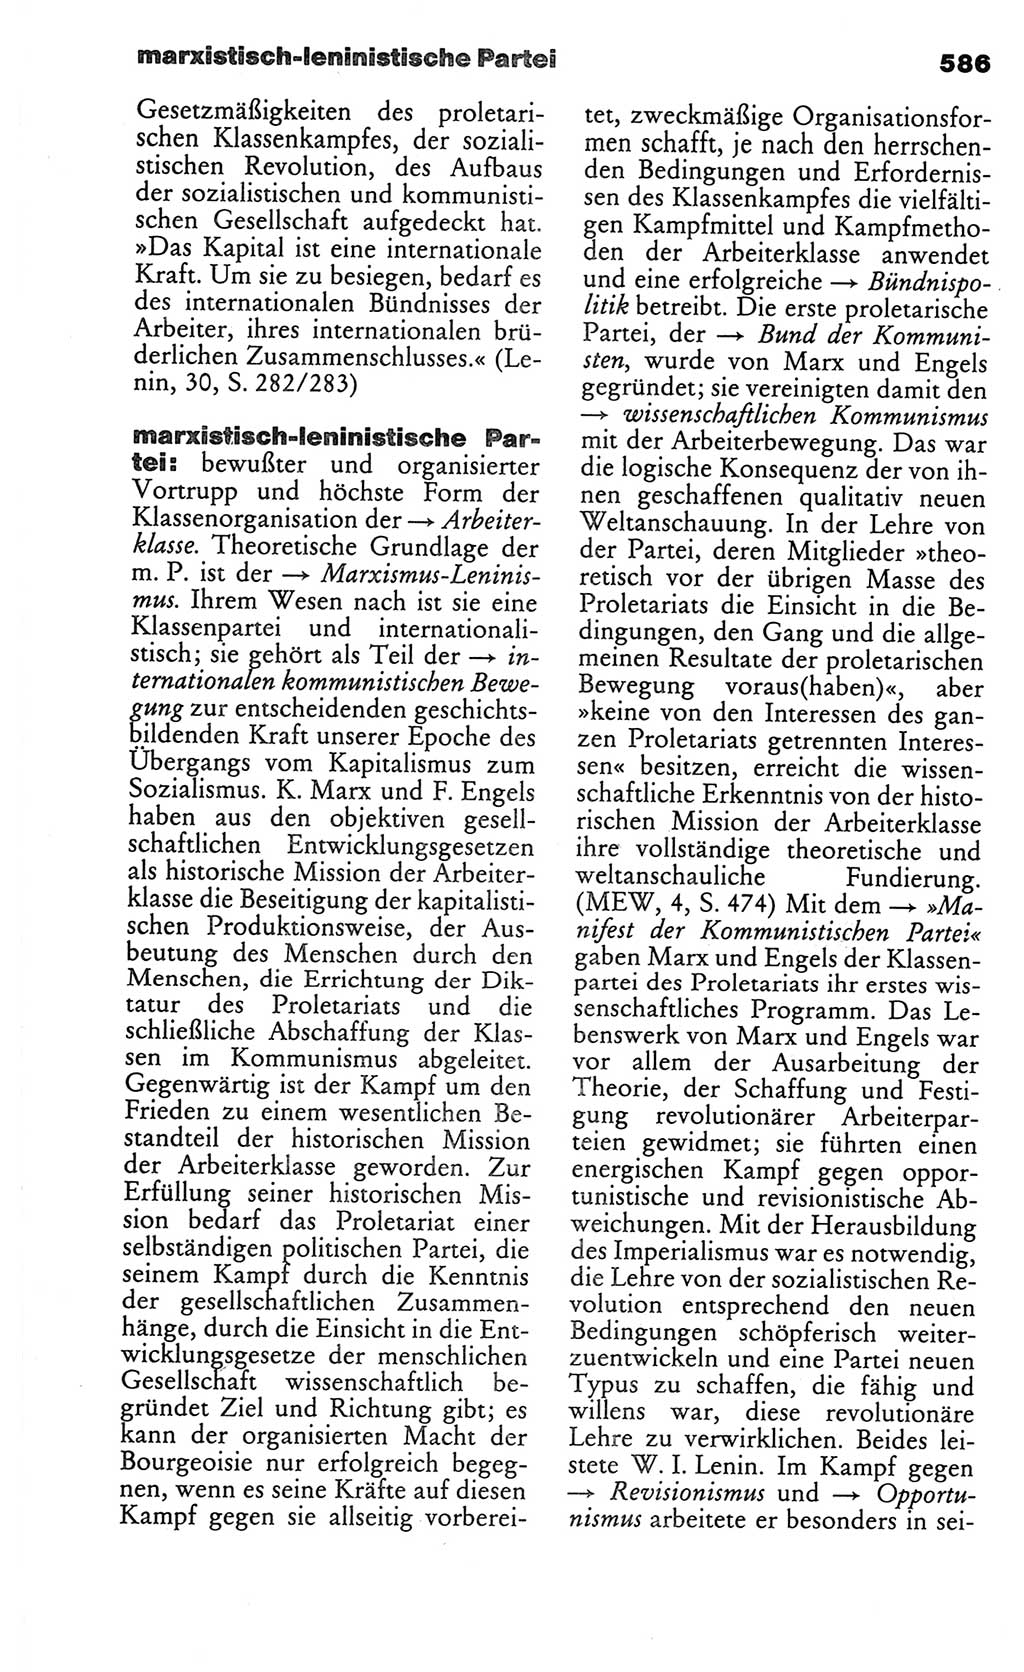 Kleines politisches Wörterbuch [Deutsche Demokratische Republik (DDR)] 1986, Seite 586 (Kl. pol. Wb. DDR 1986, S. 586)